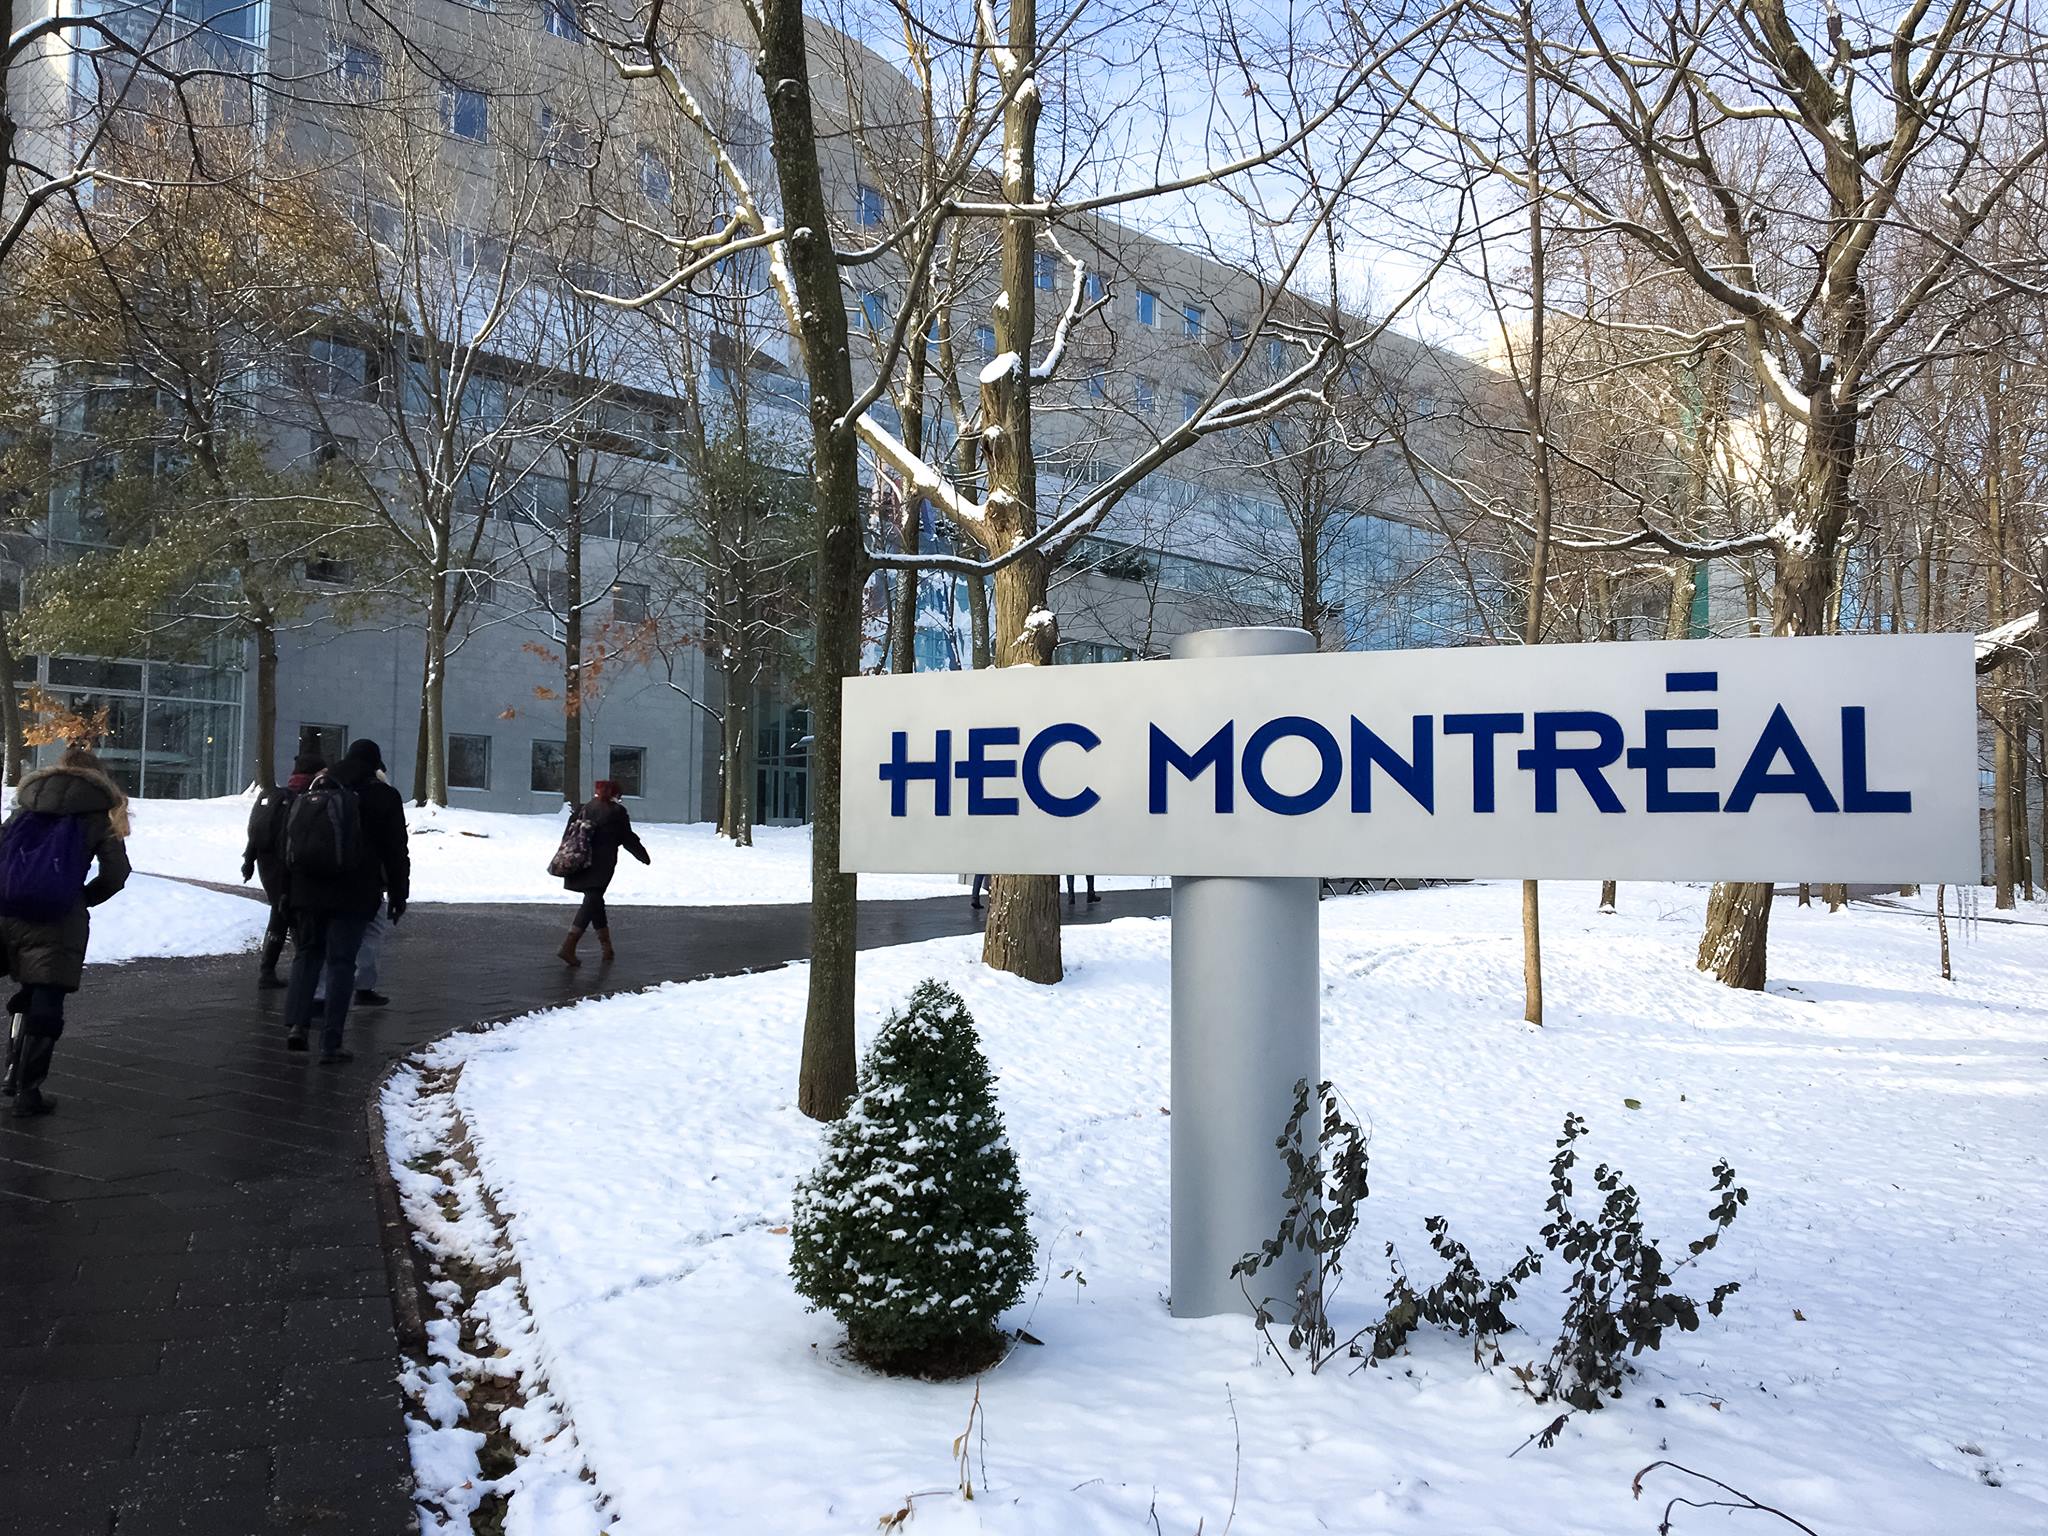 إتش إي سي مونتريال – HEC